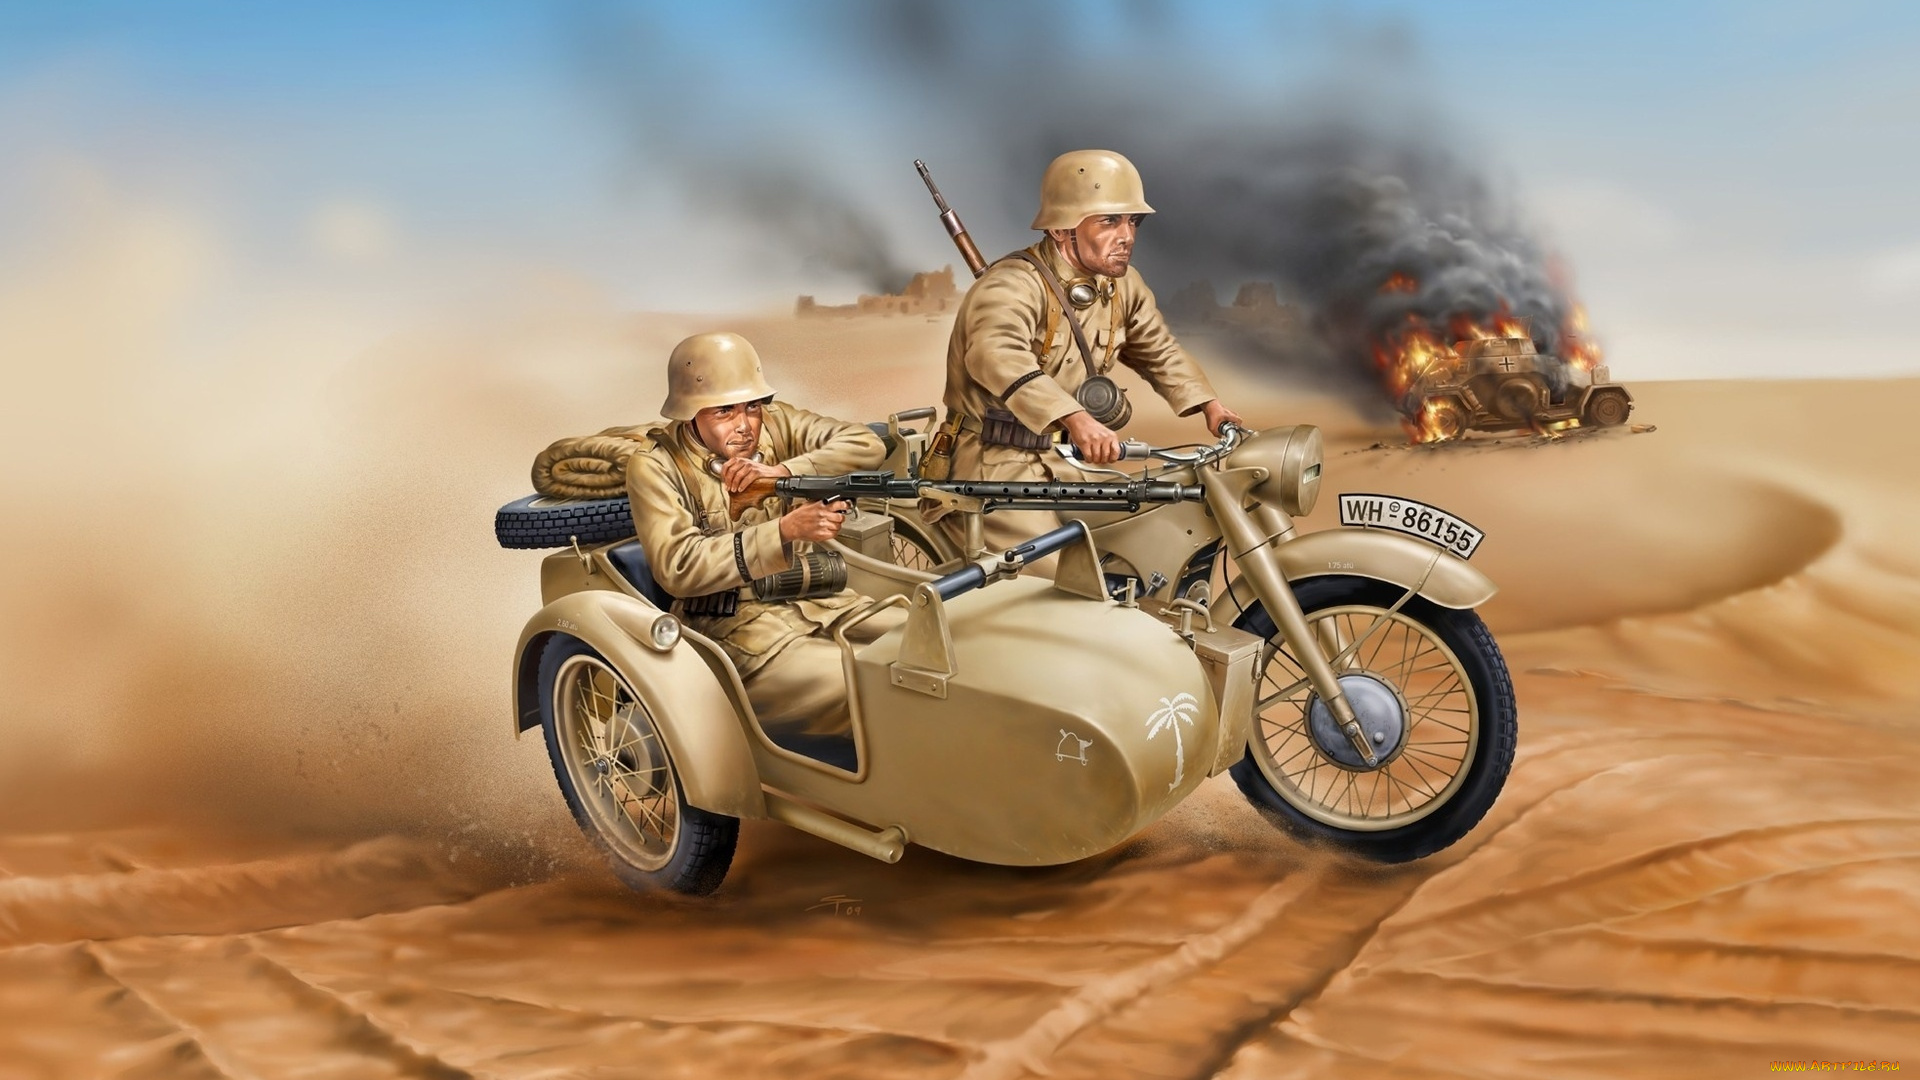 рисованное, армия, солдаты, дым, мотоцикл, оружие, немецкие, песок